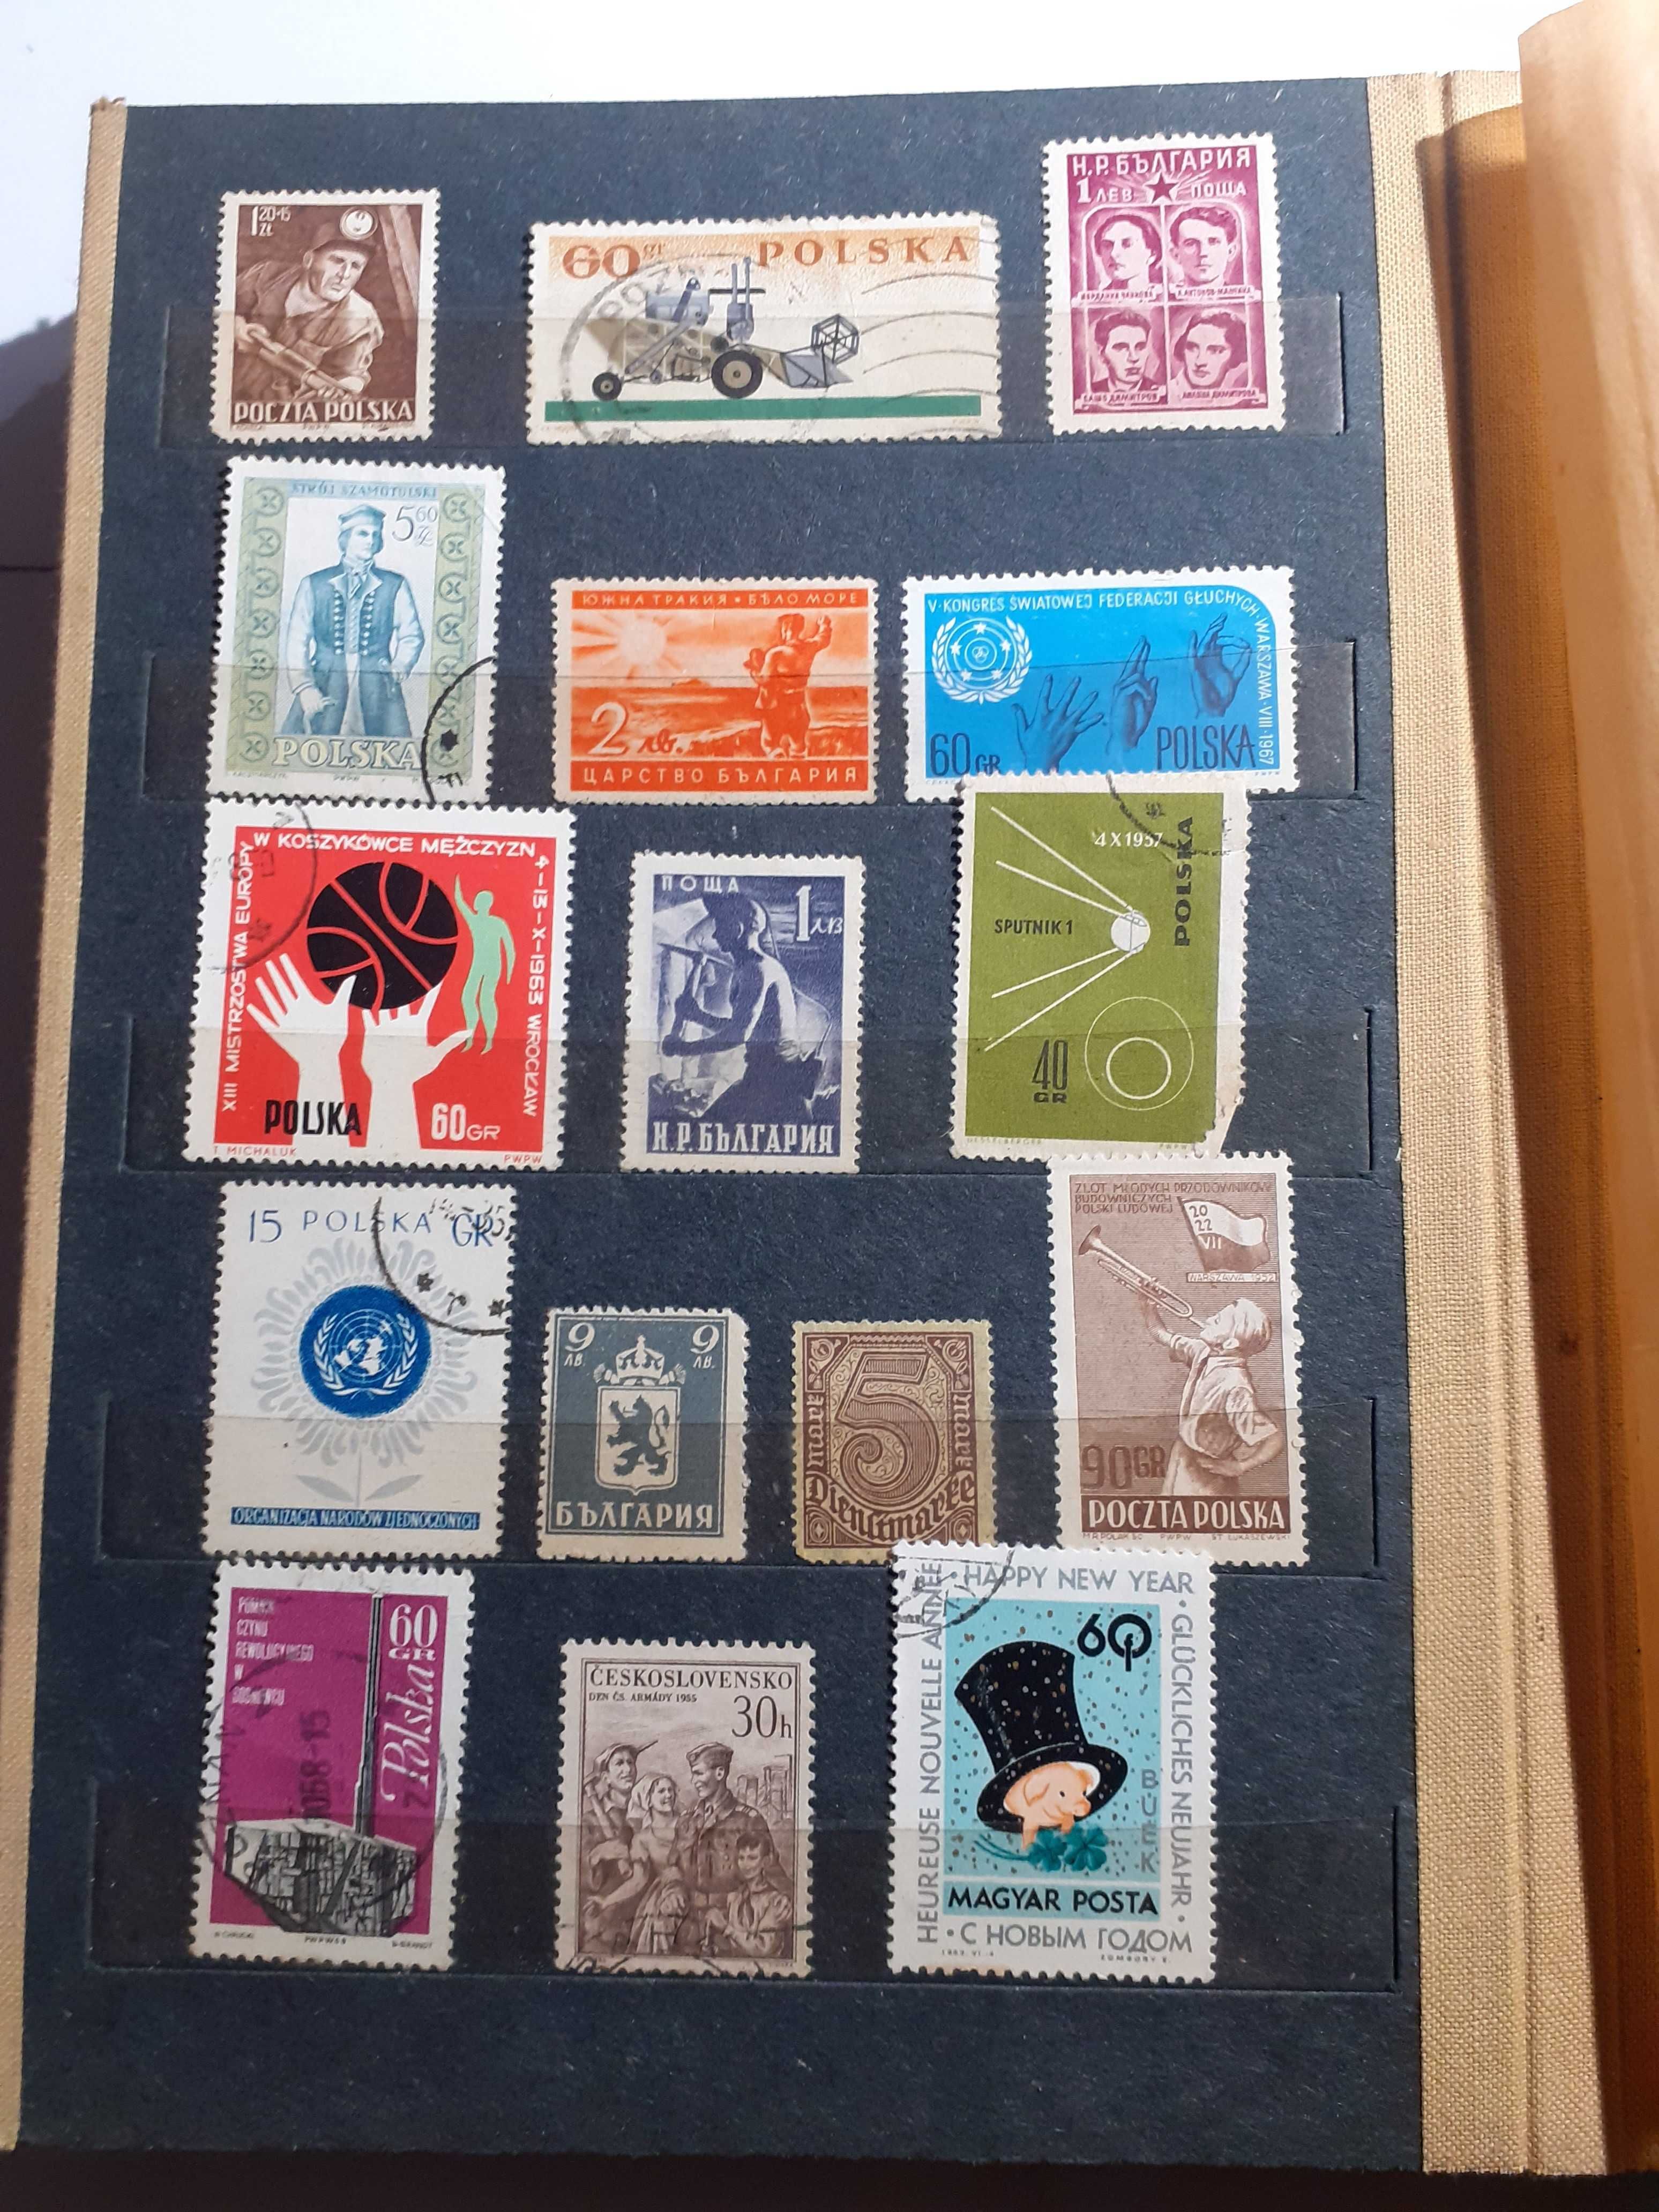 Stare znaczki duży klaser  Polskie i zagraniczne